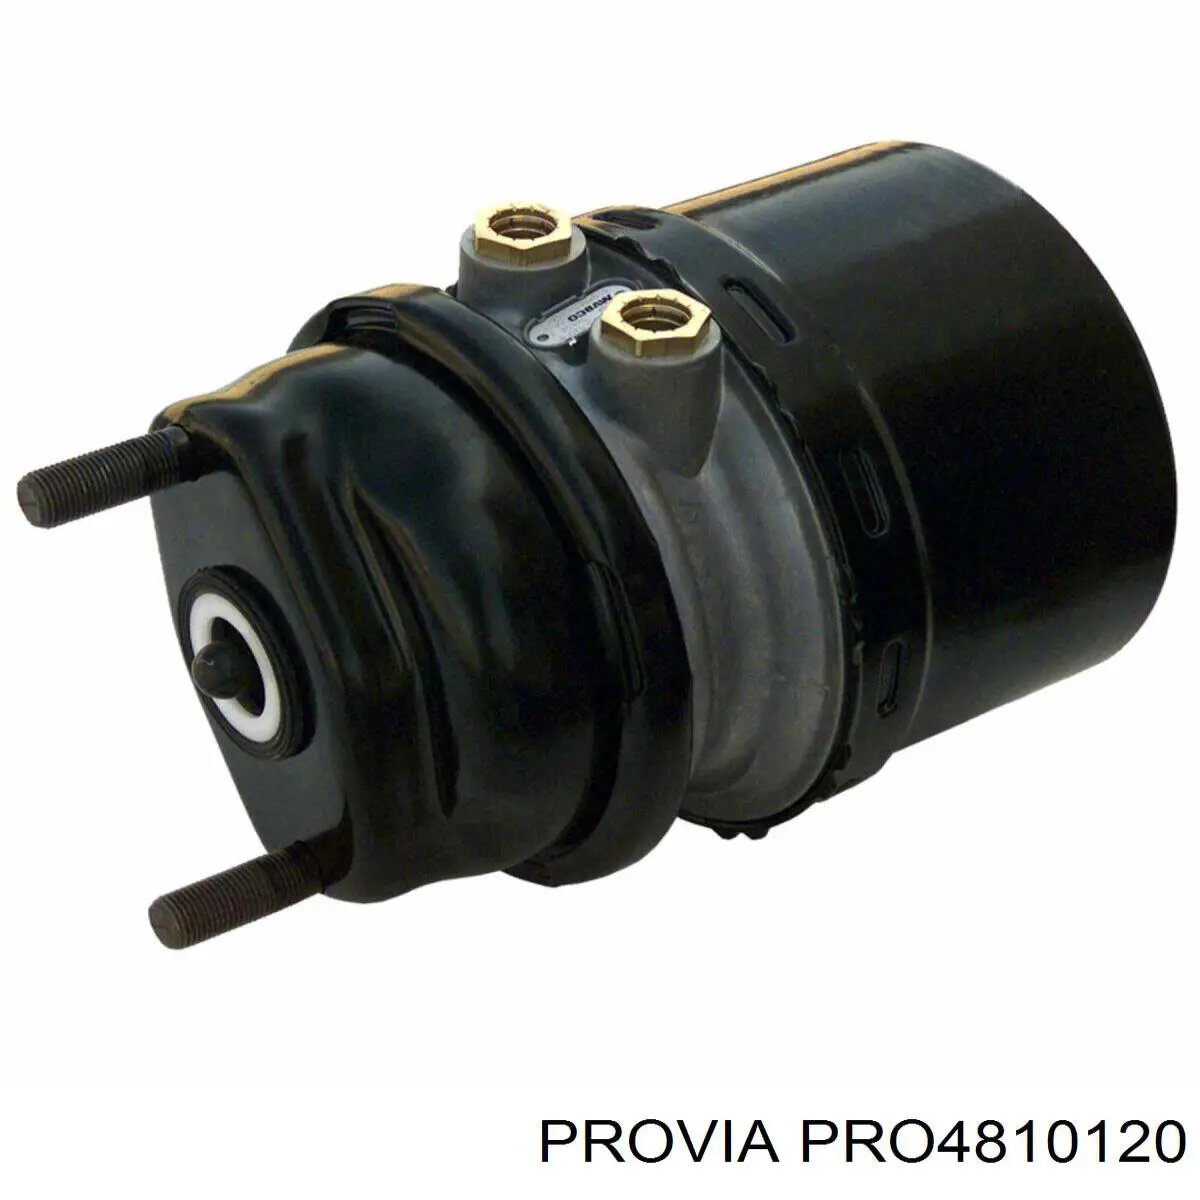 PRO4810120 Provia камера тормозная (энергоаккумулятор)